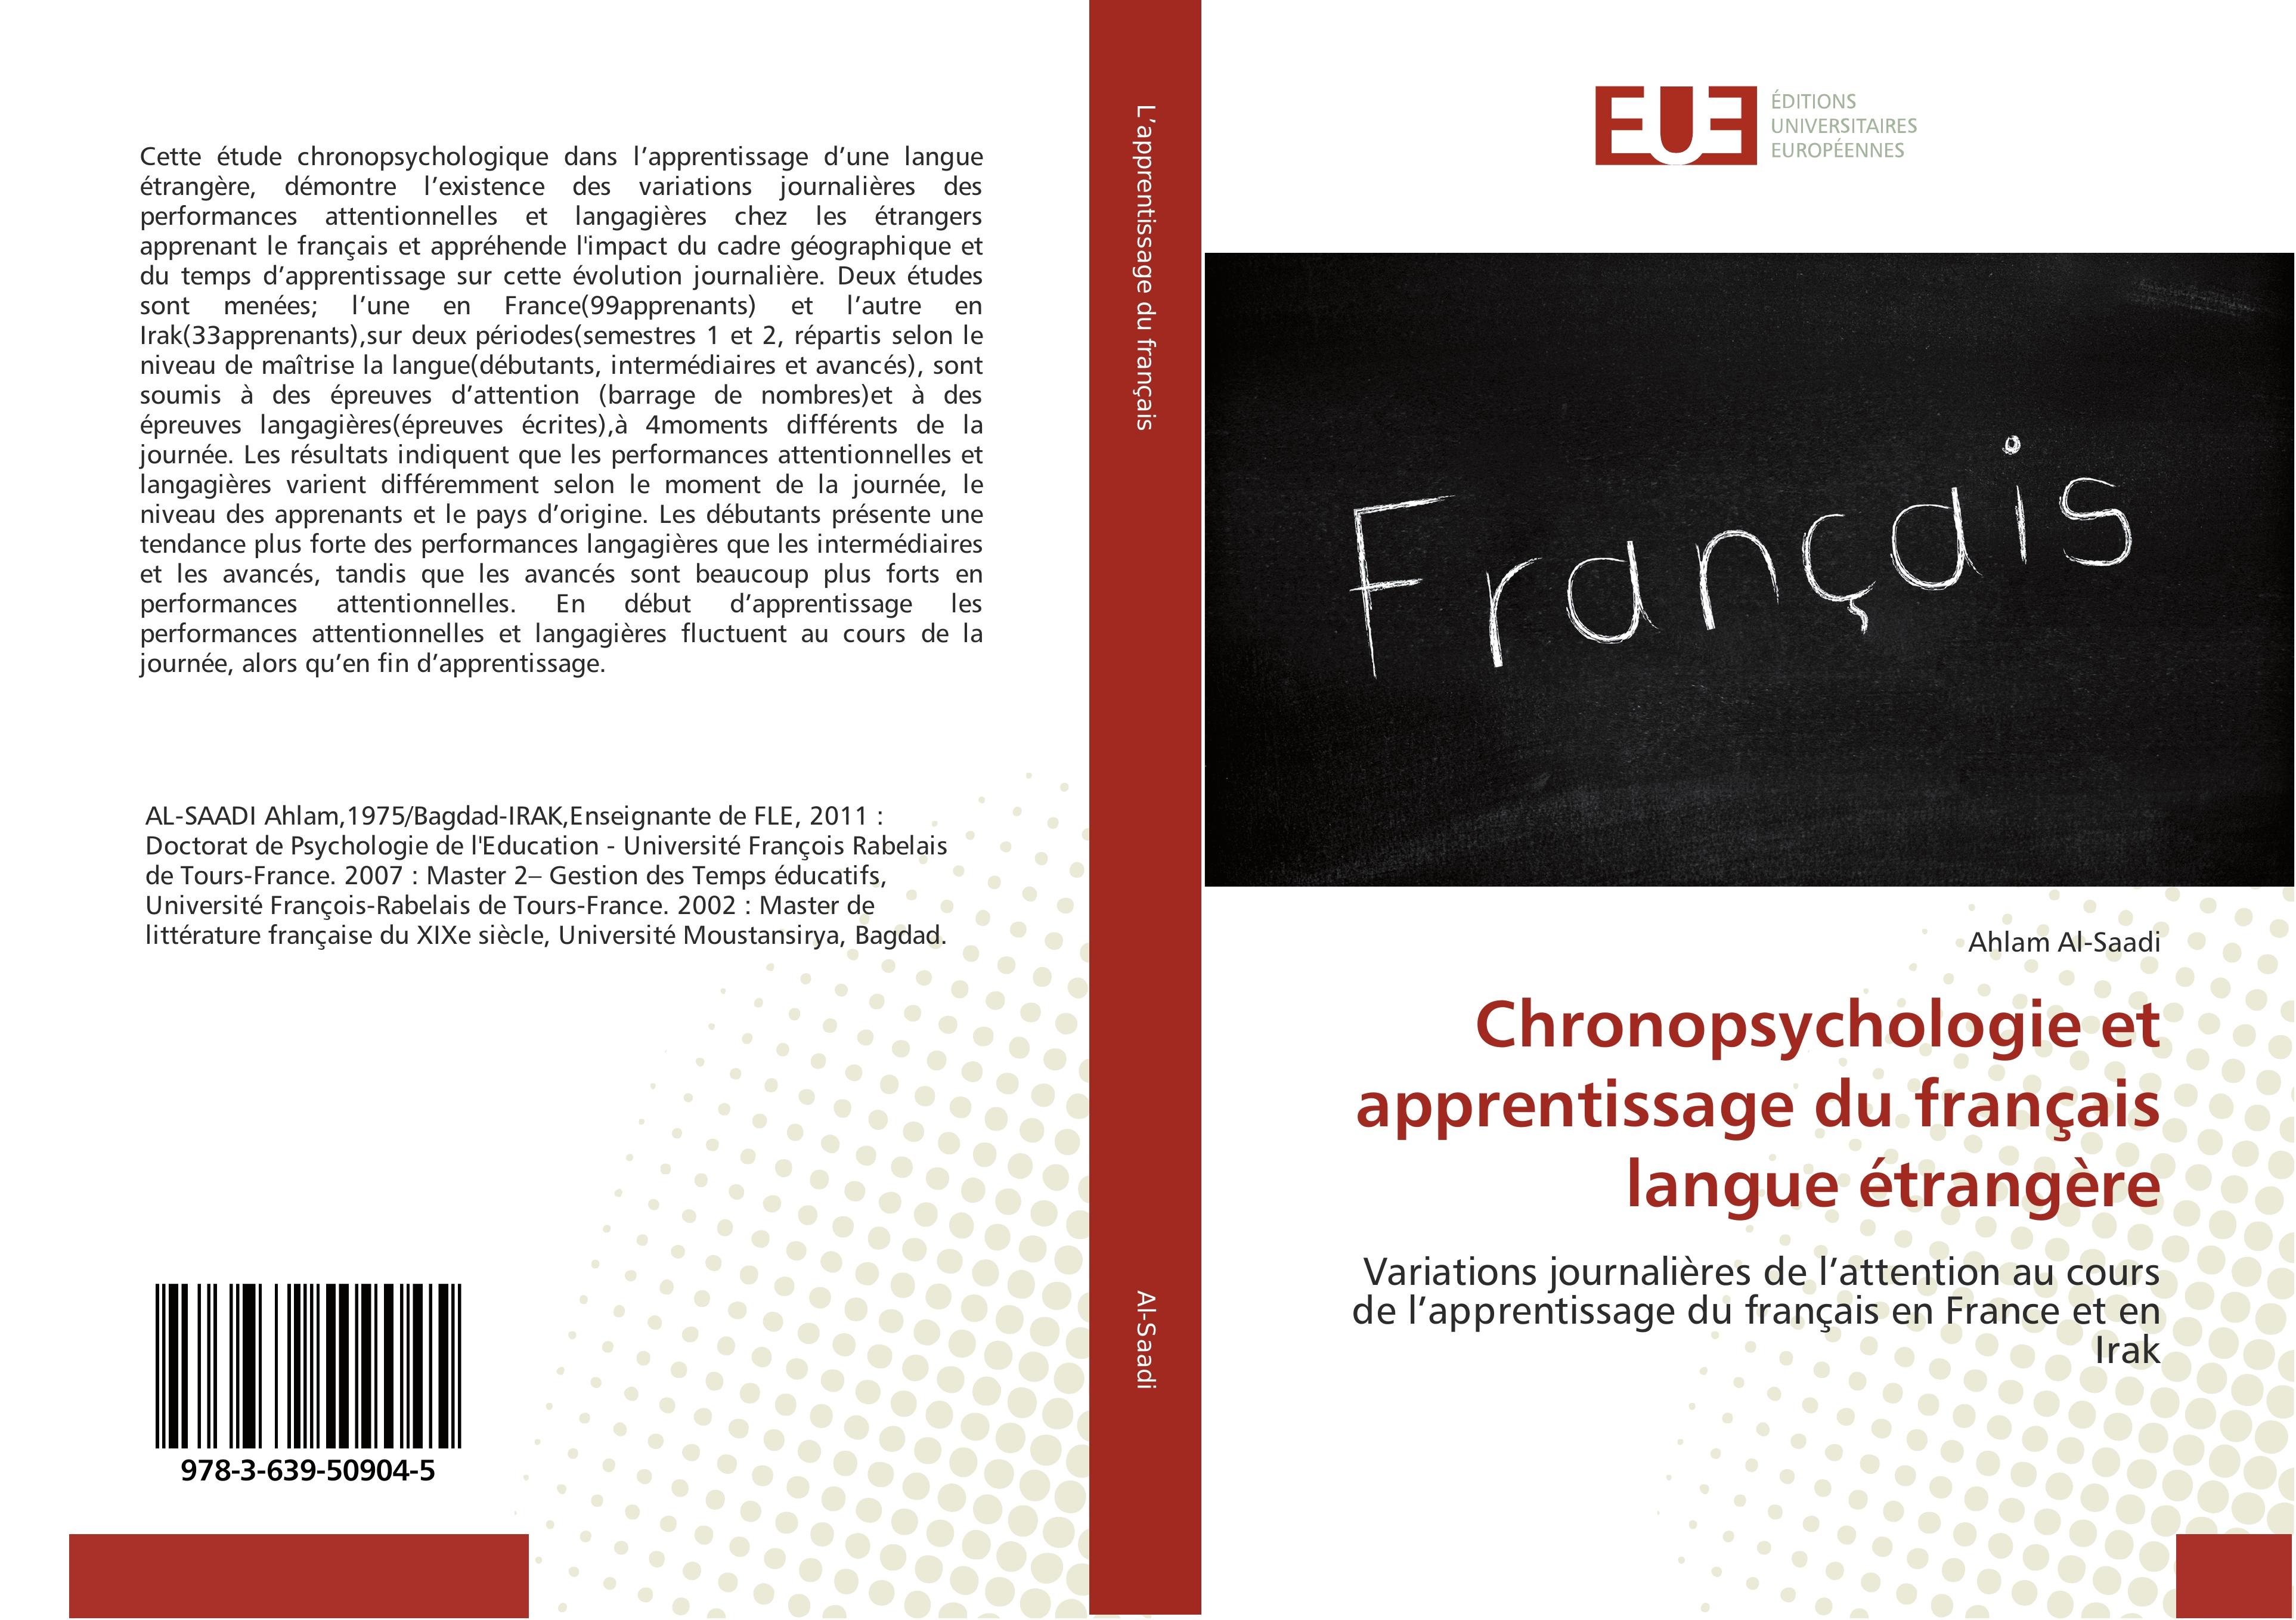 Chronopsychologie et apprentissage du français langue étrangère